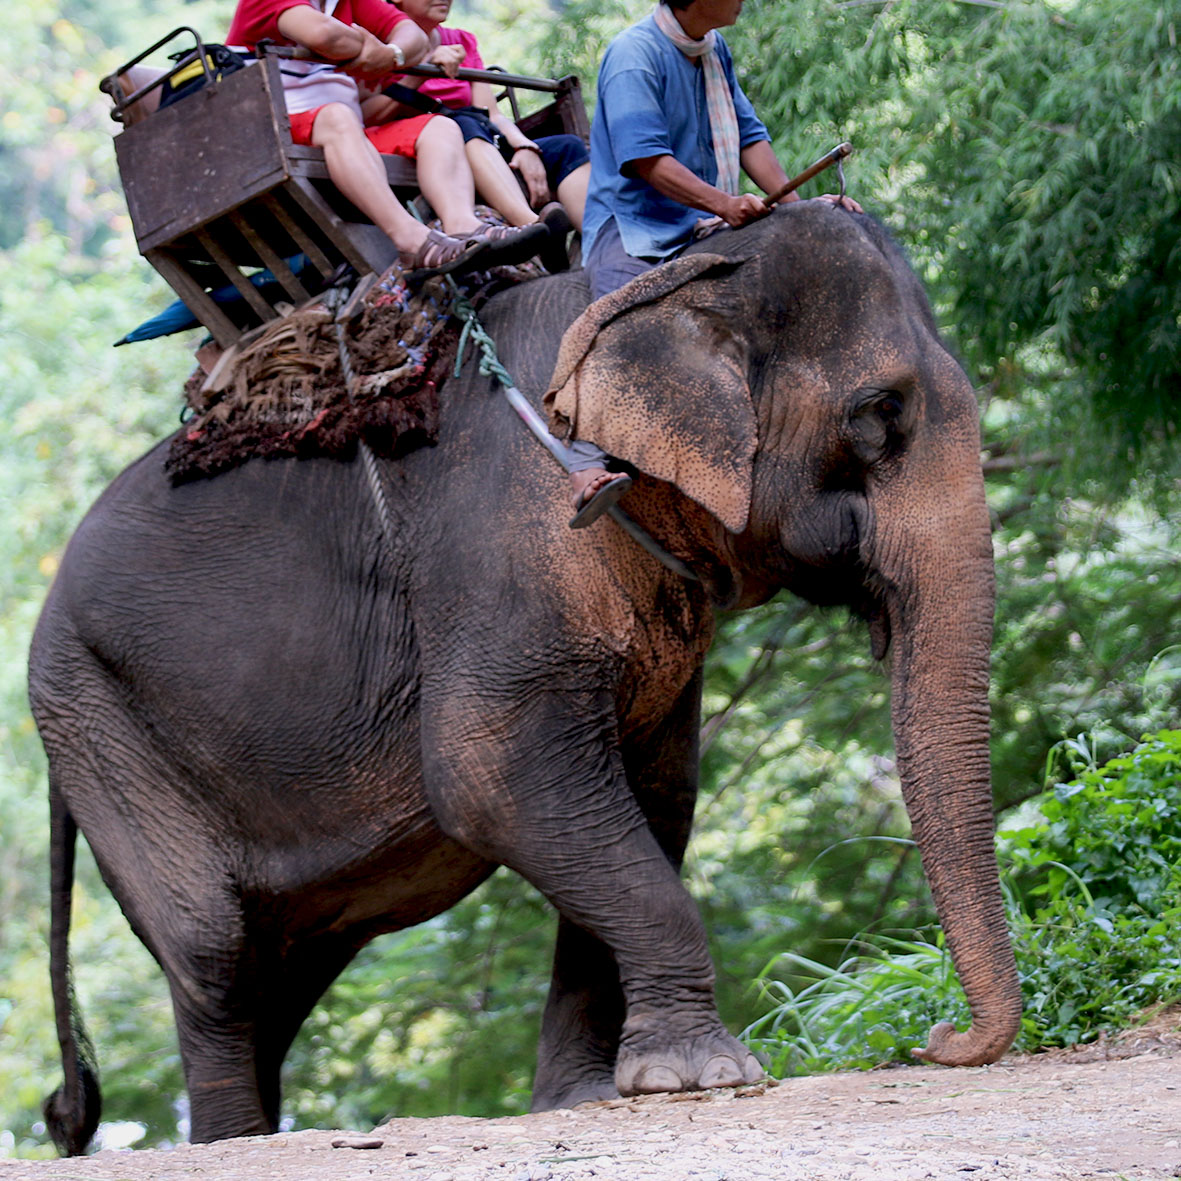 tourists riding an elephant